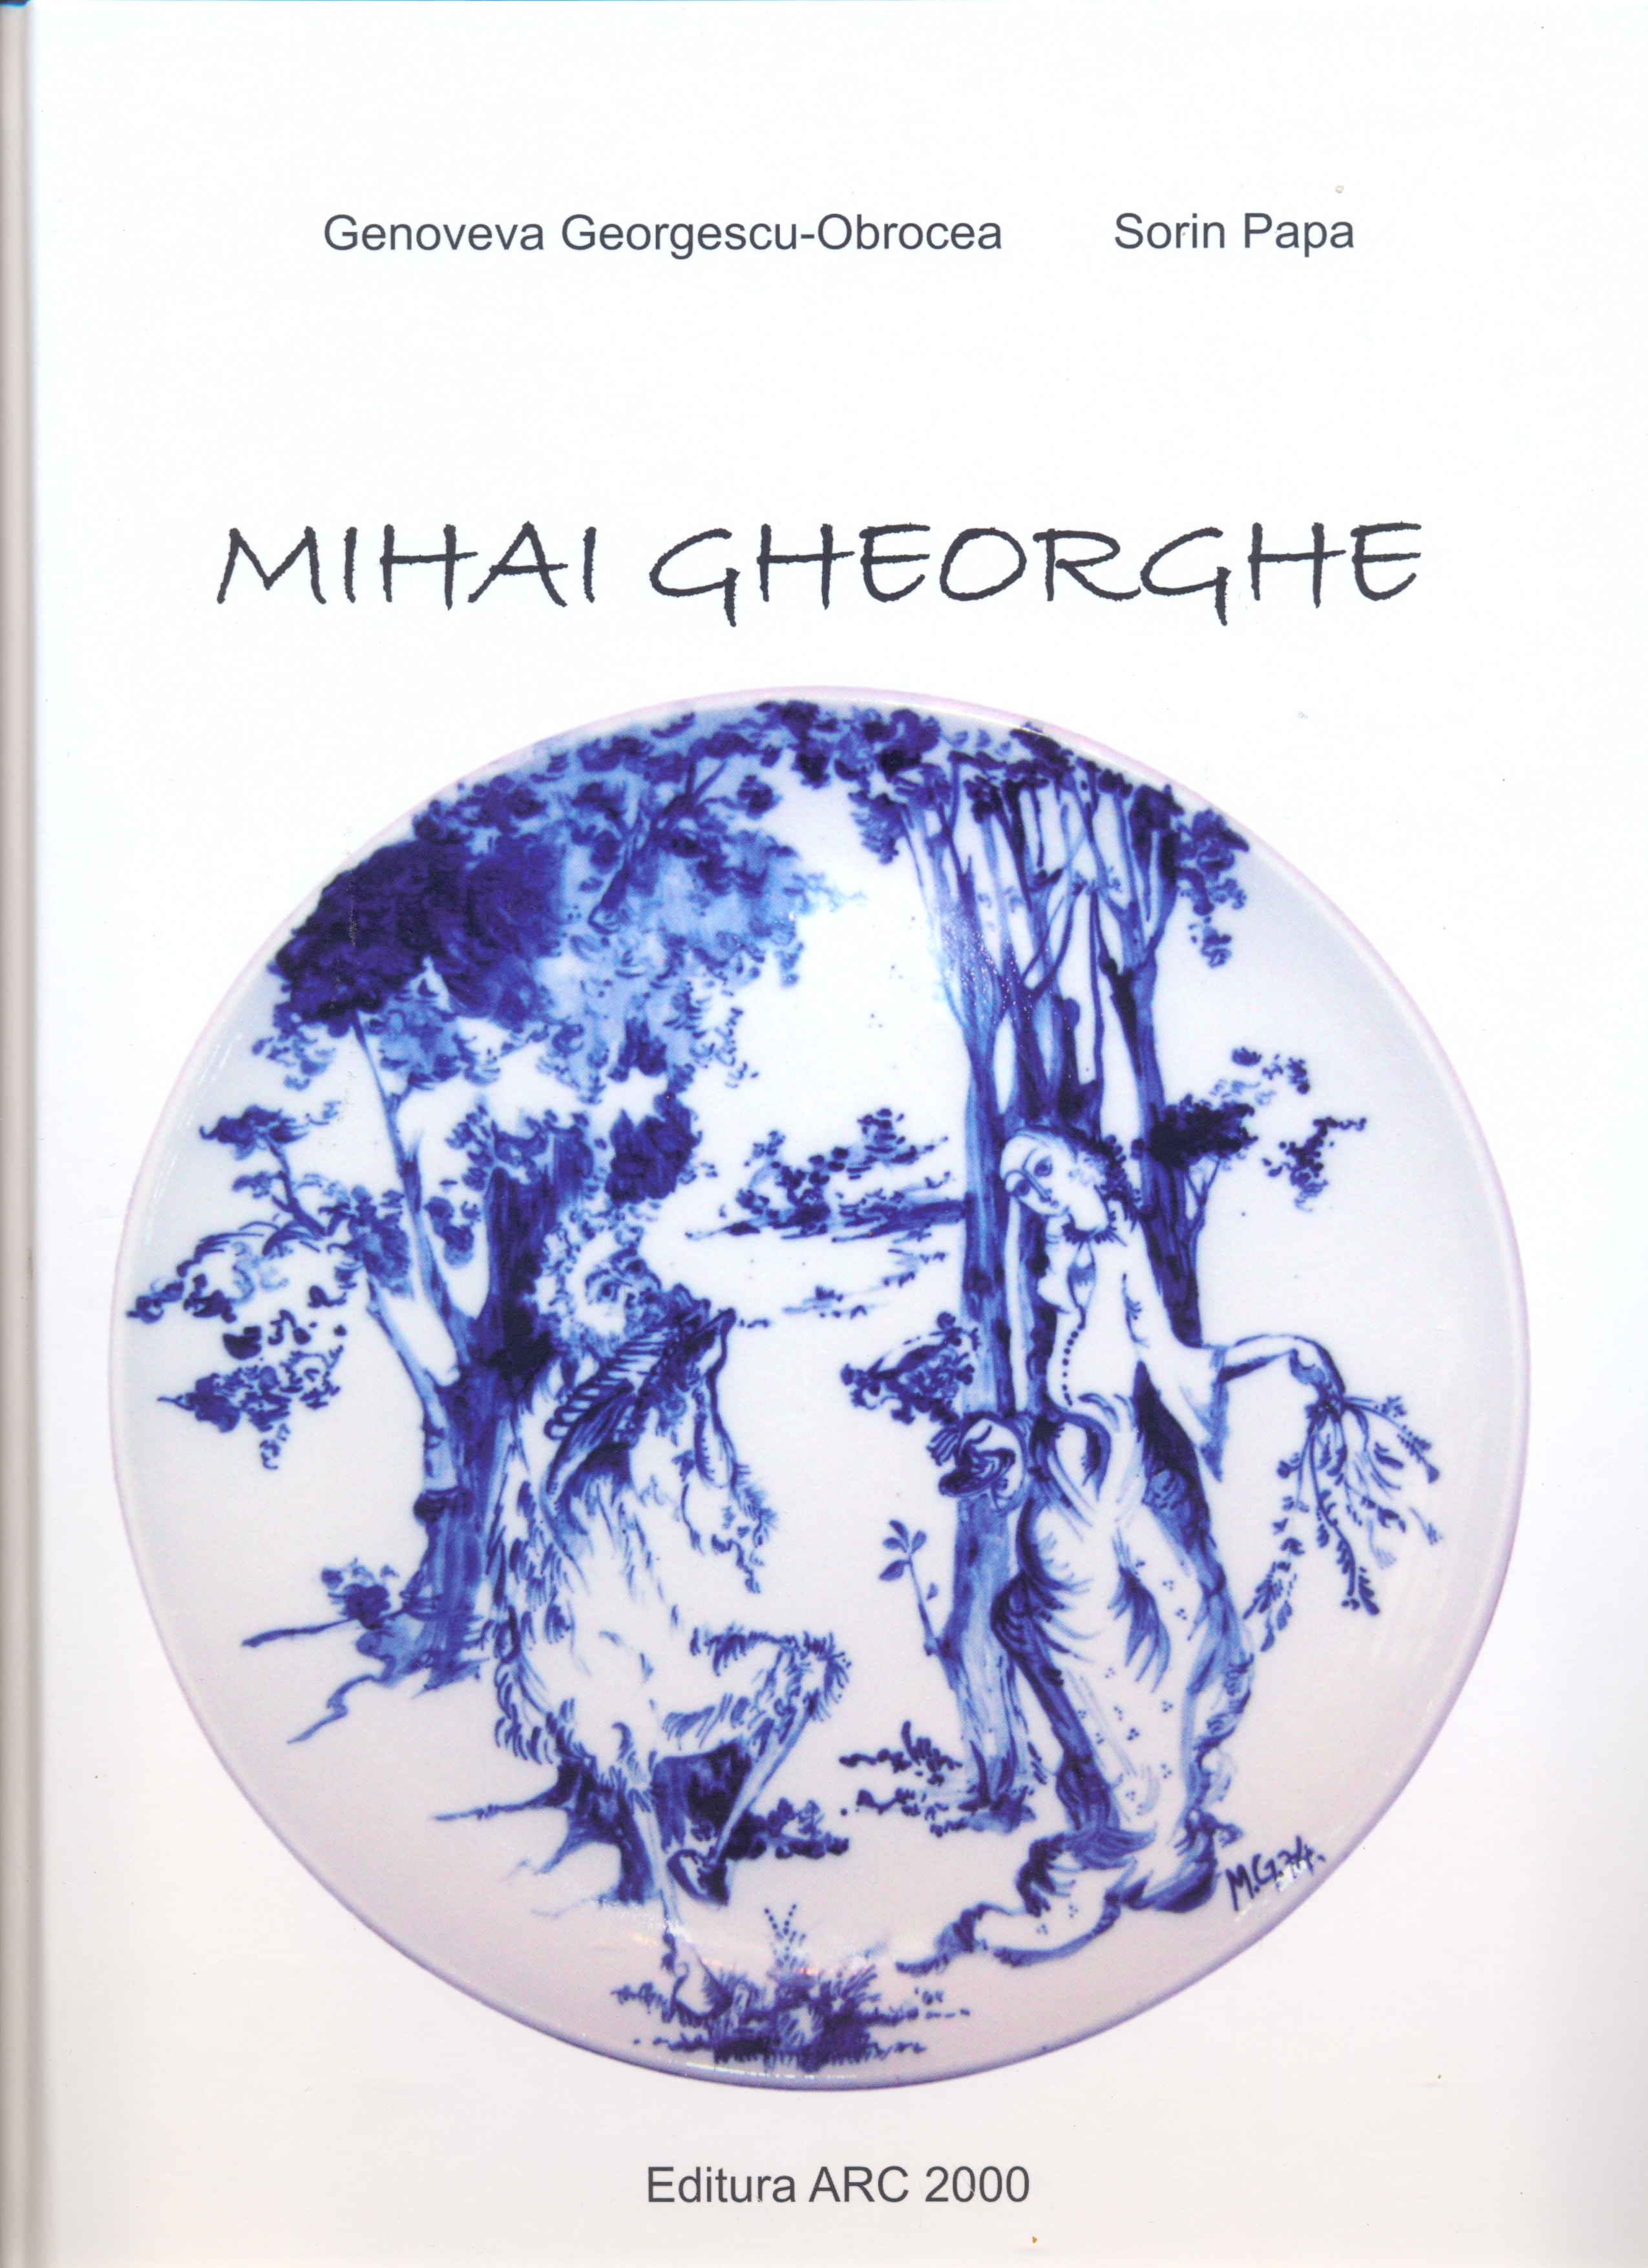 Album Mihai Gheorghe